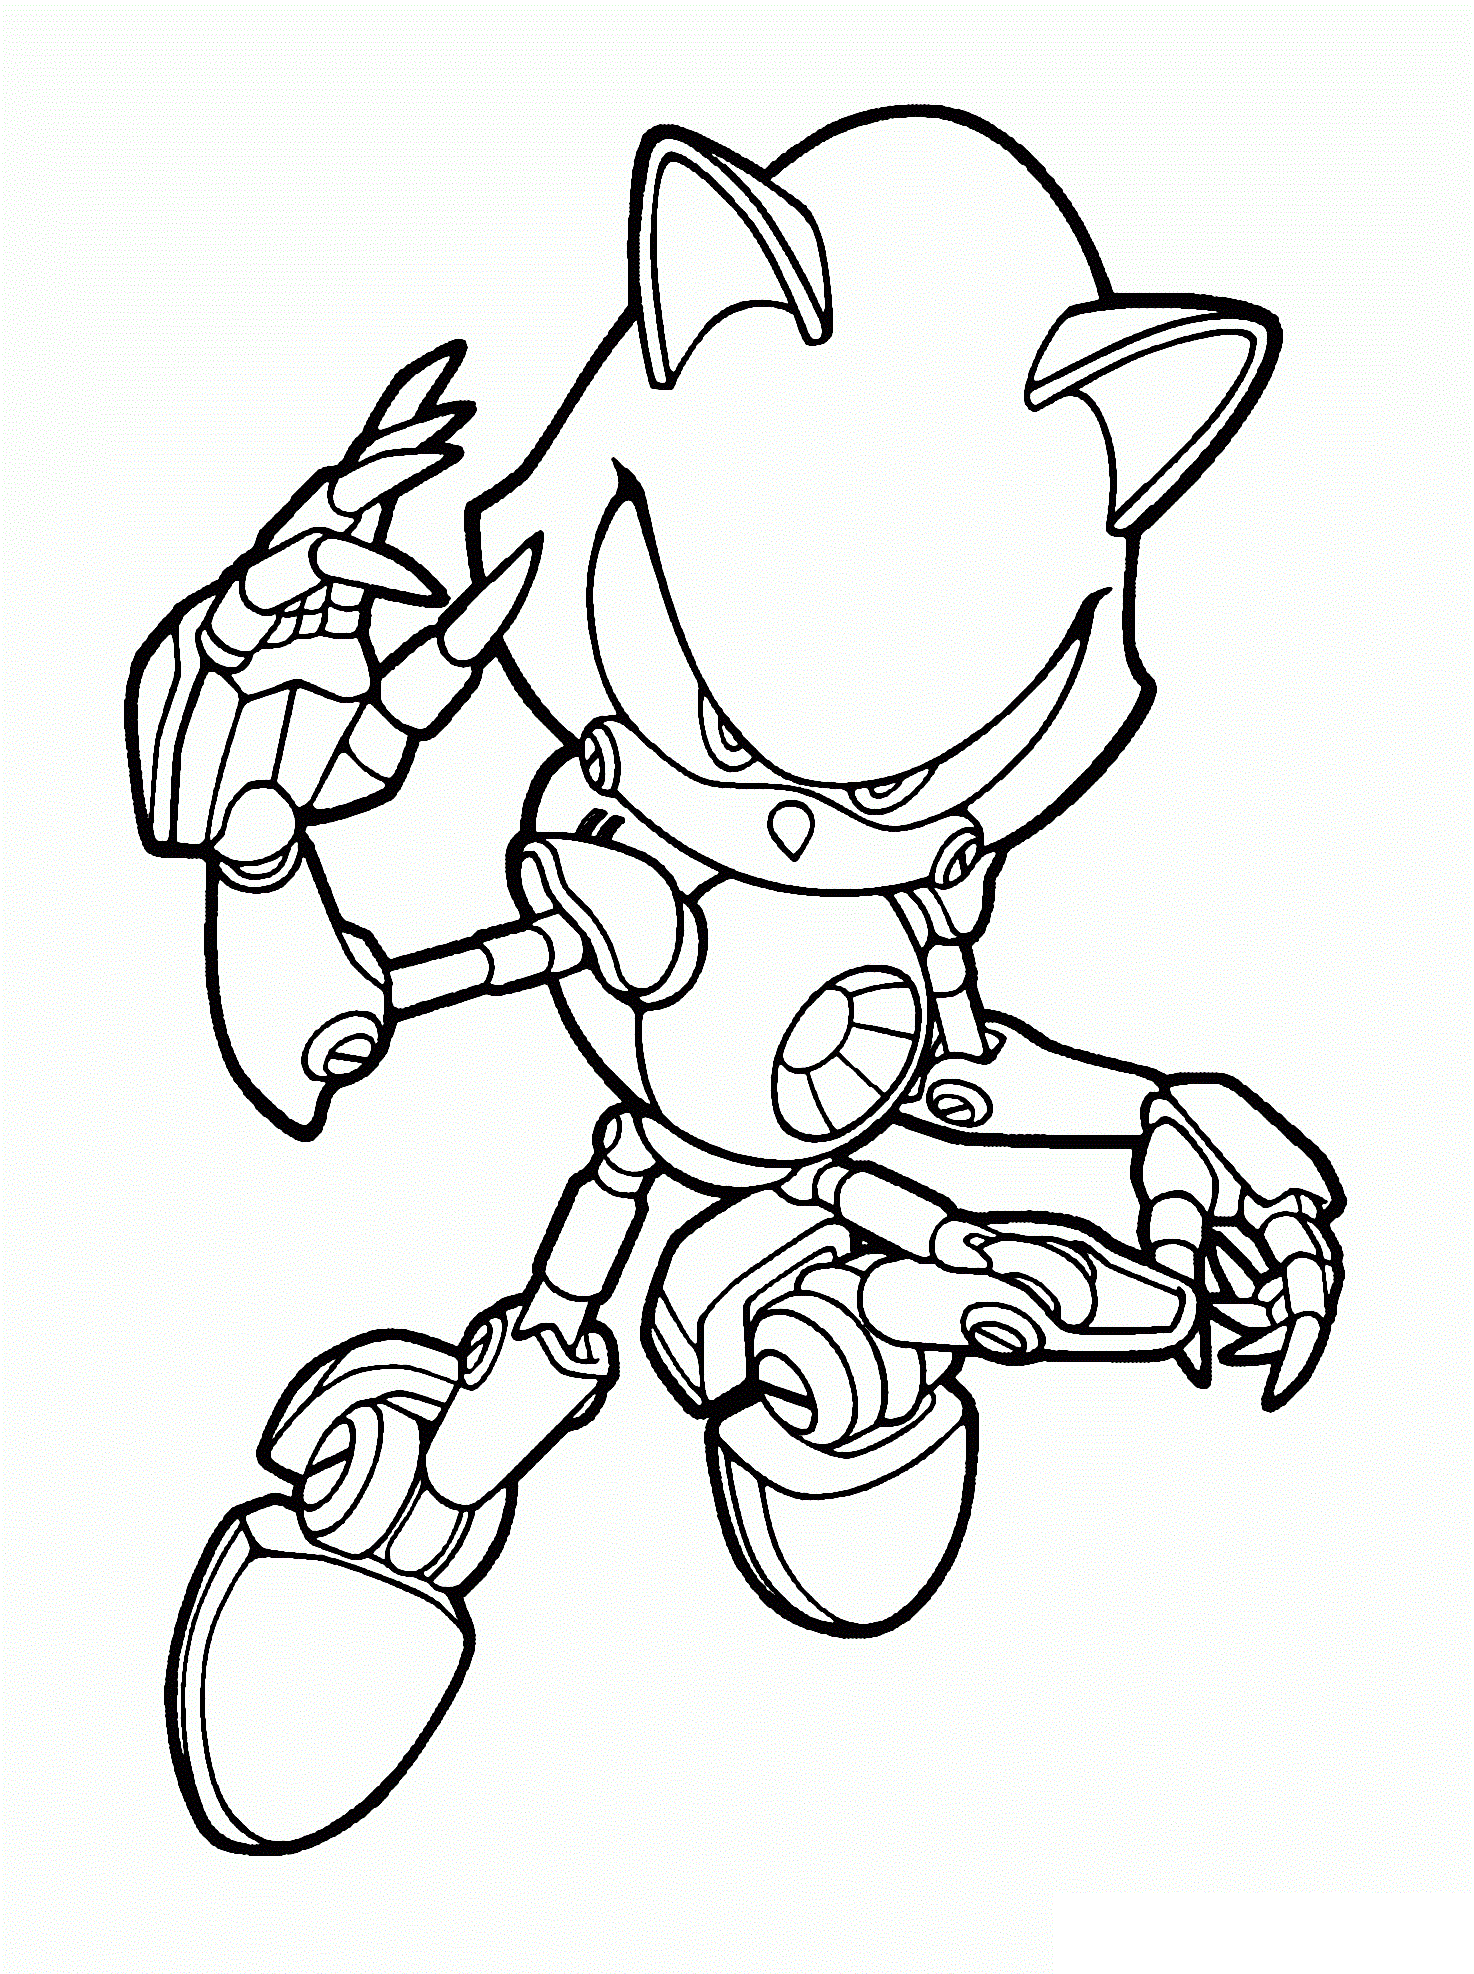 Tranh tô màu Sonic người máy